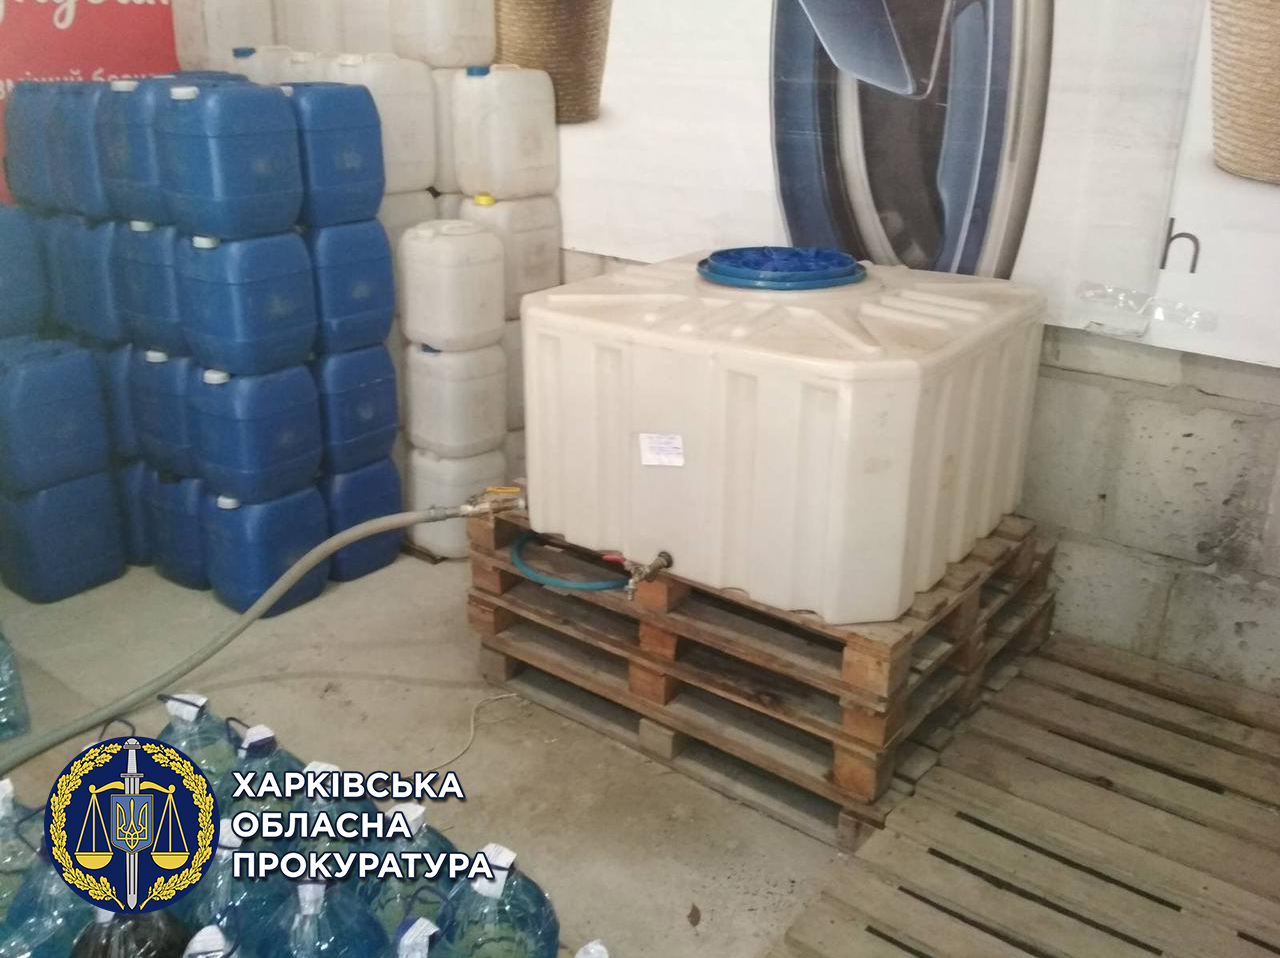 Не по ГОСТу: в гаражном кооперативе изъяли 540 литров суррогатного алкоголя. Новости Харьков